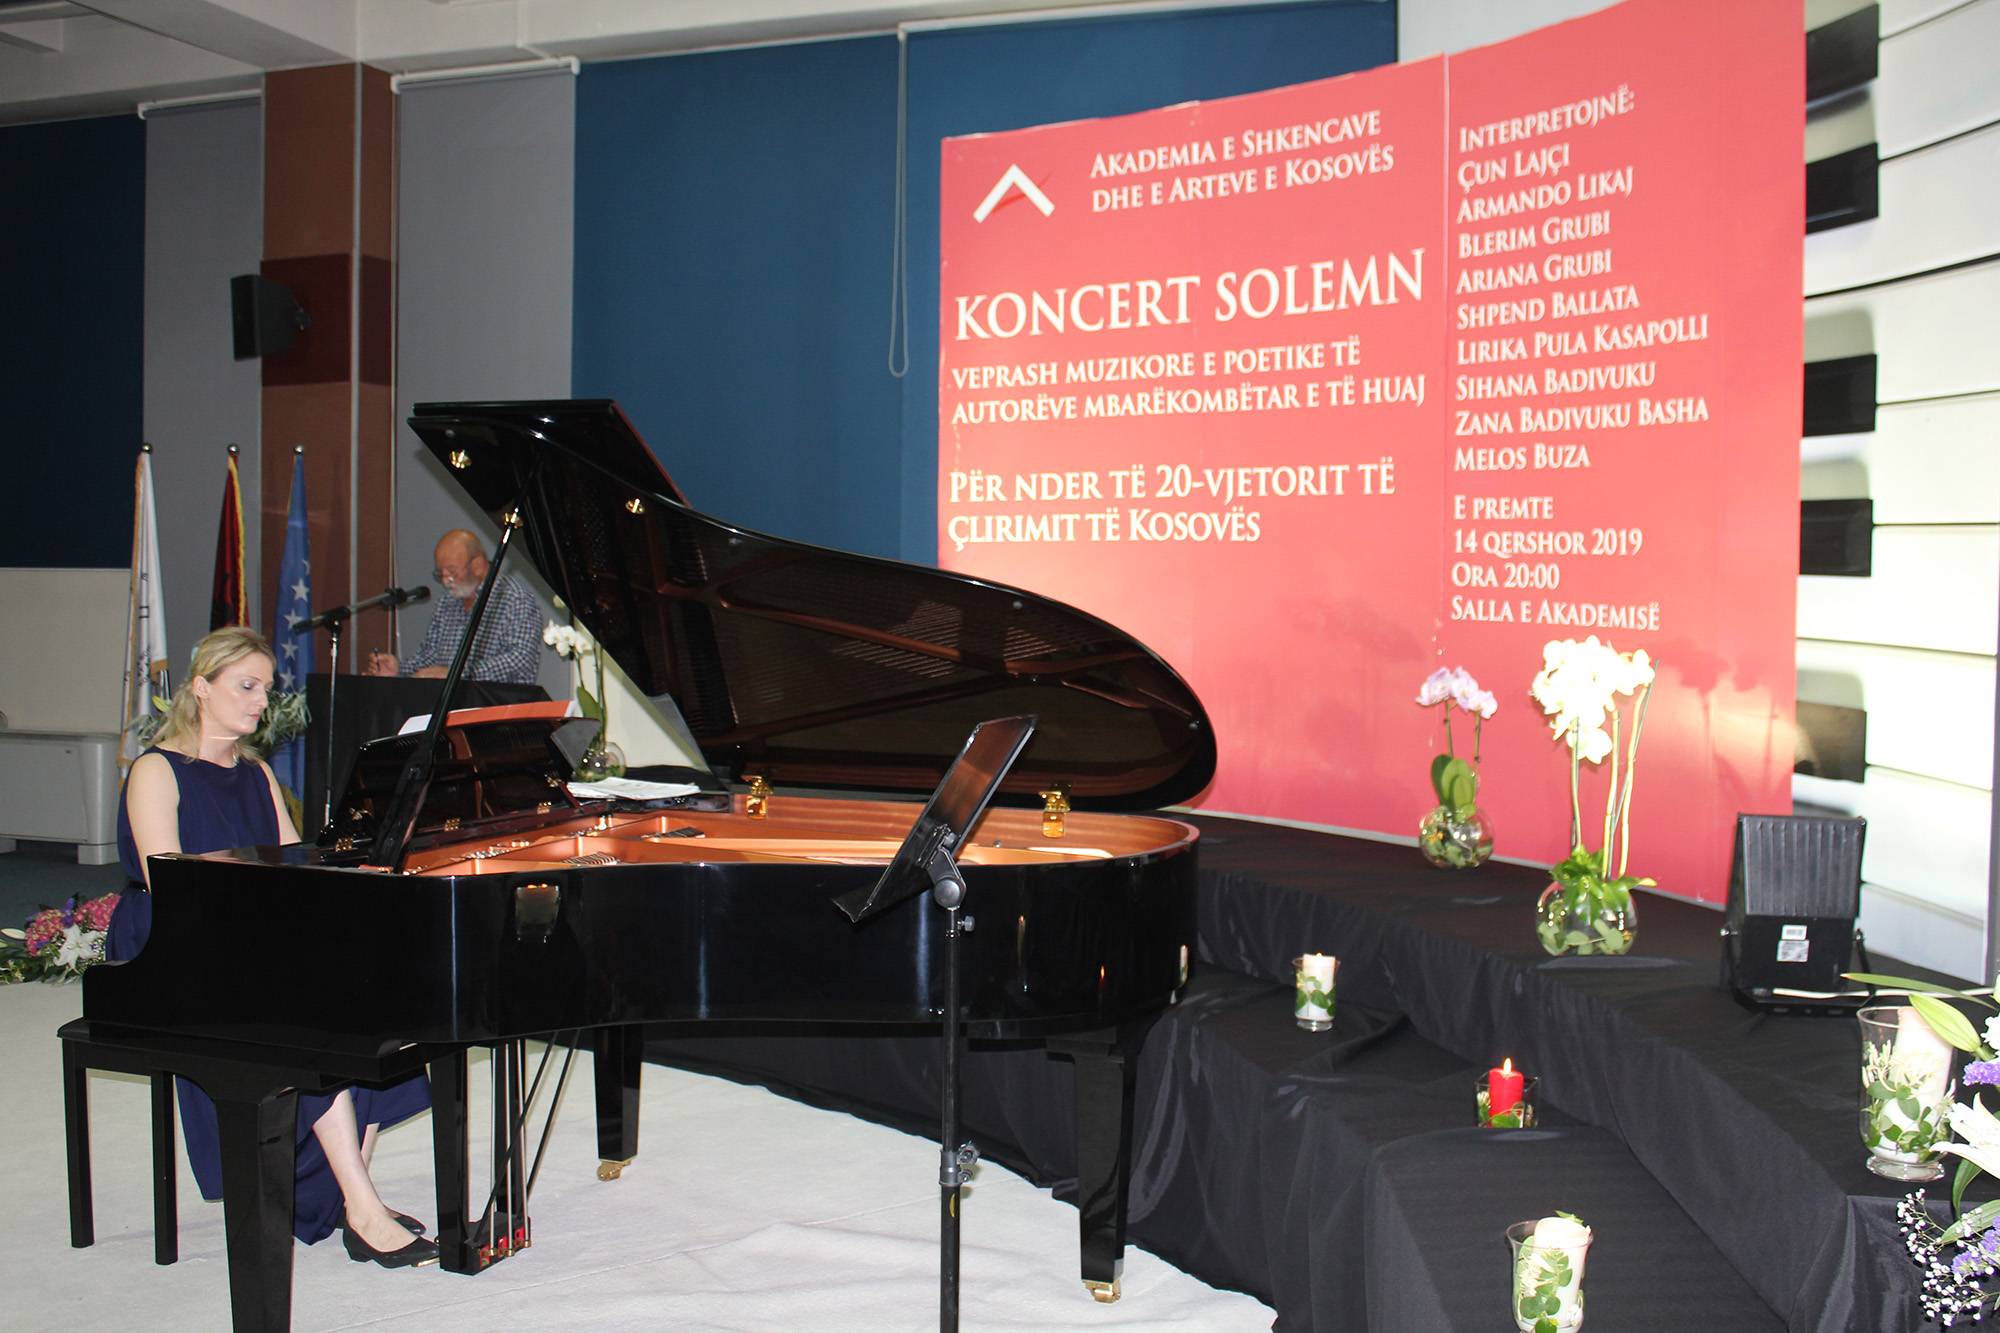 Foto_Koncert solemn, veprash muzikore e poetike të autorëve mbarëkombëtar e të huaj